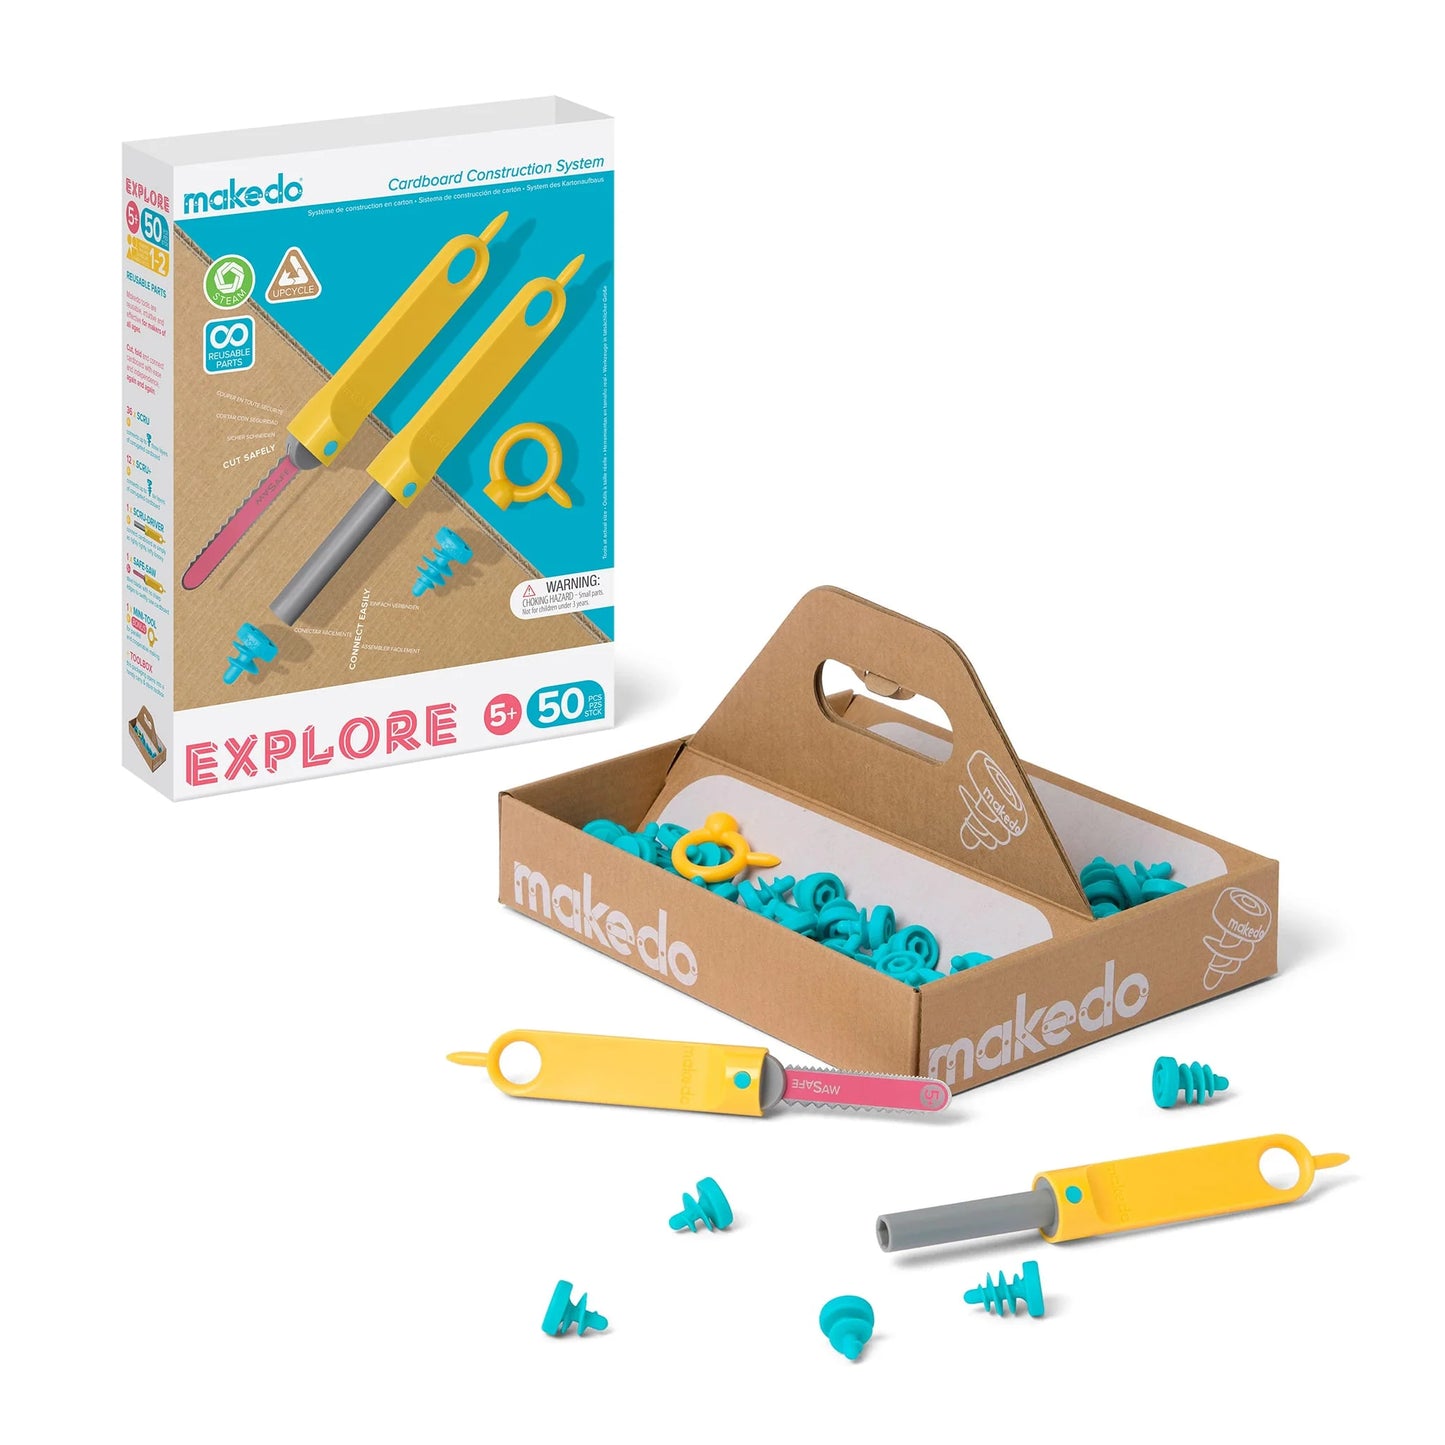 Make.do Explore Kit